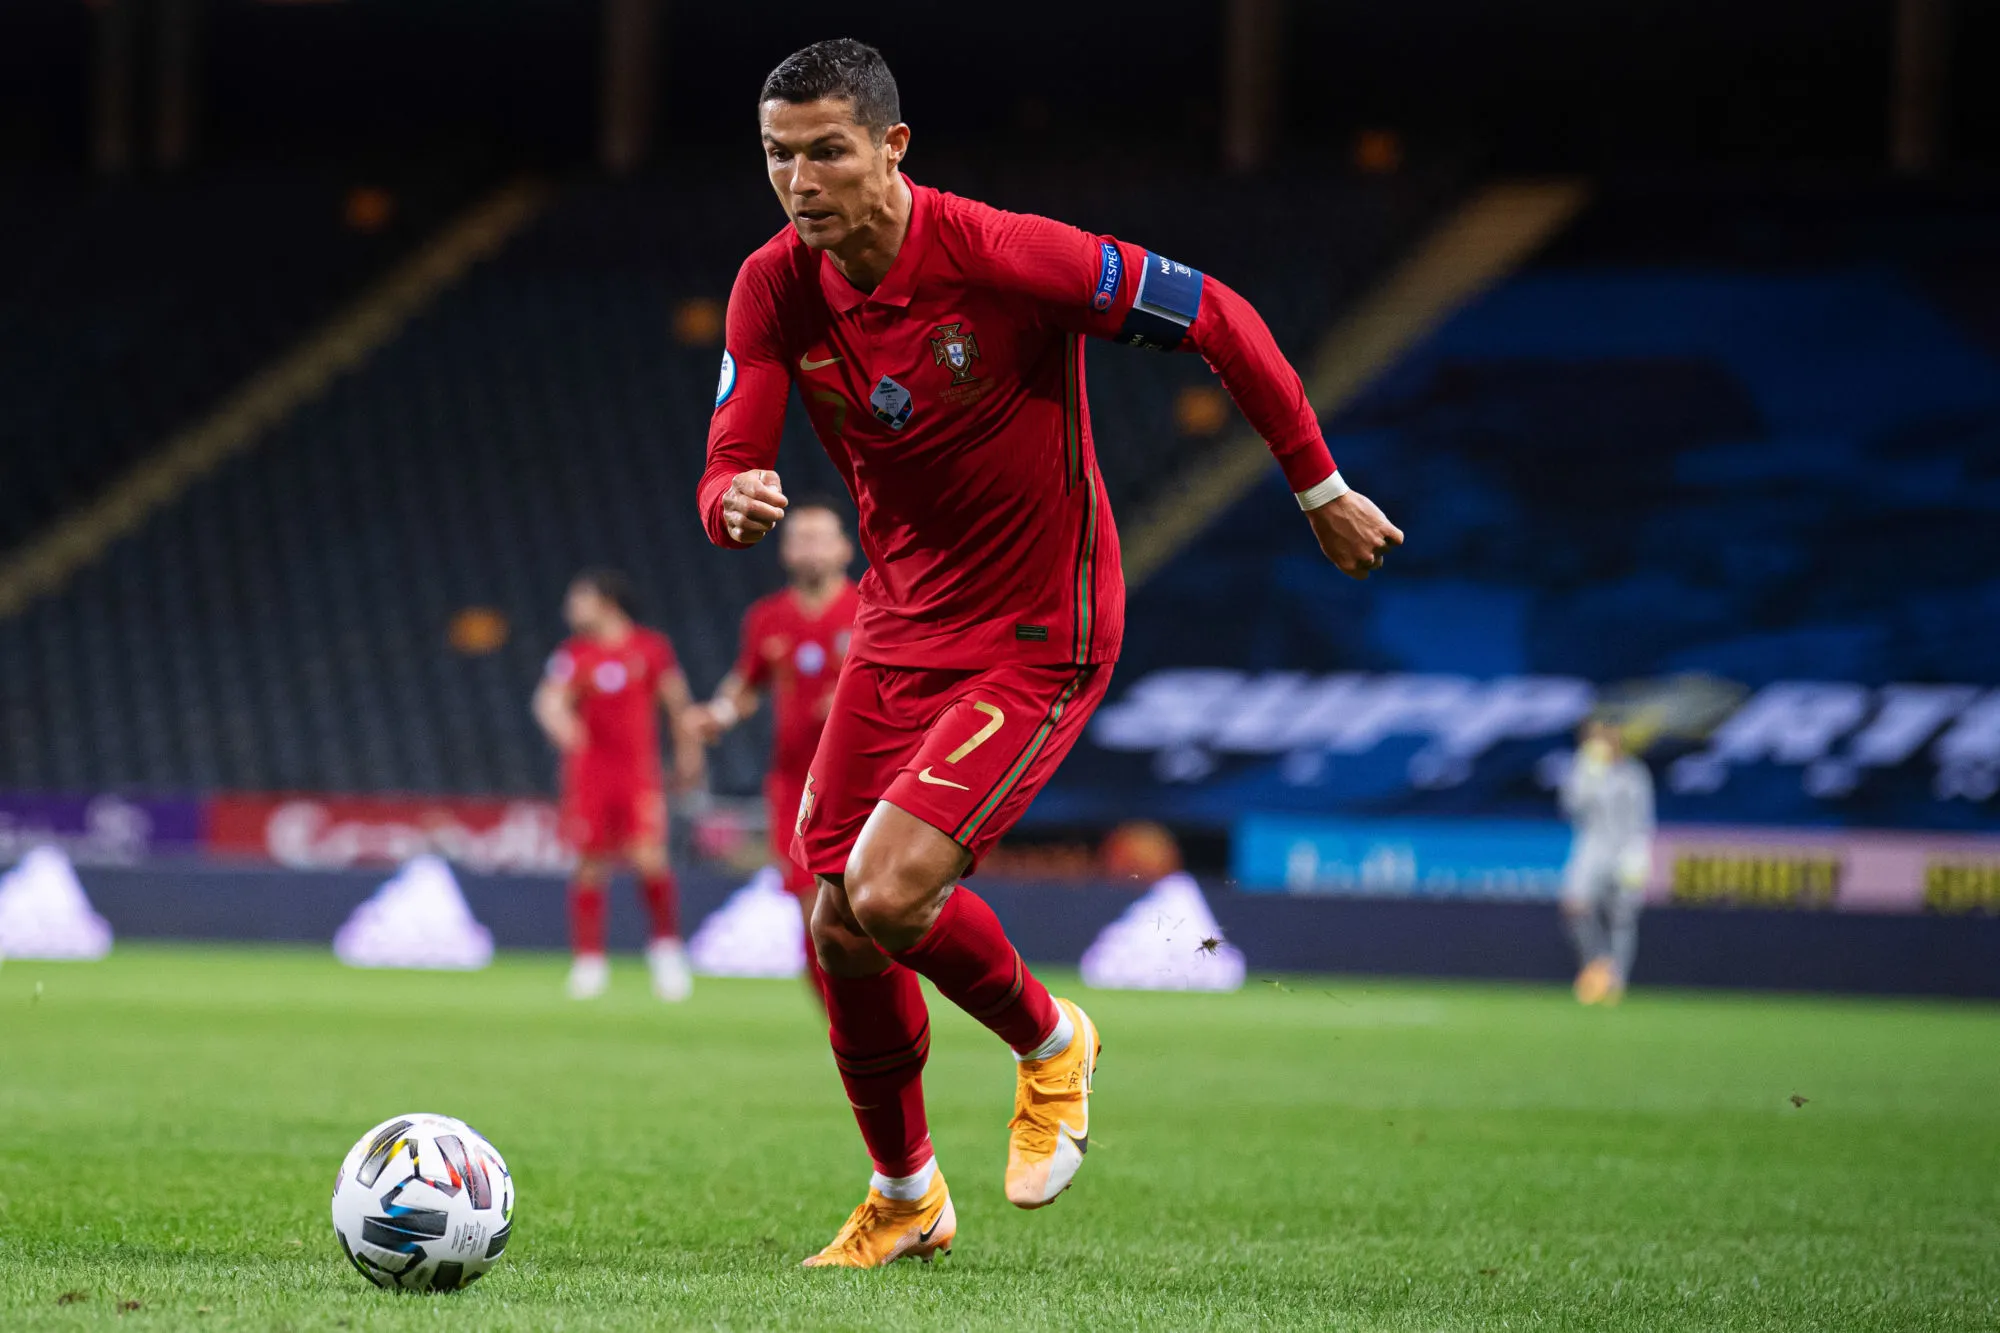 Pronostic Serbie Portugal : Analyse, cotes et prono du match des éliminatoires pour la Coupe du monde 2022